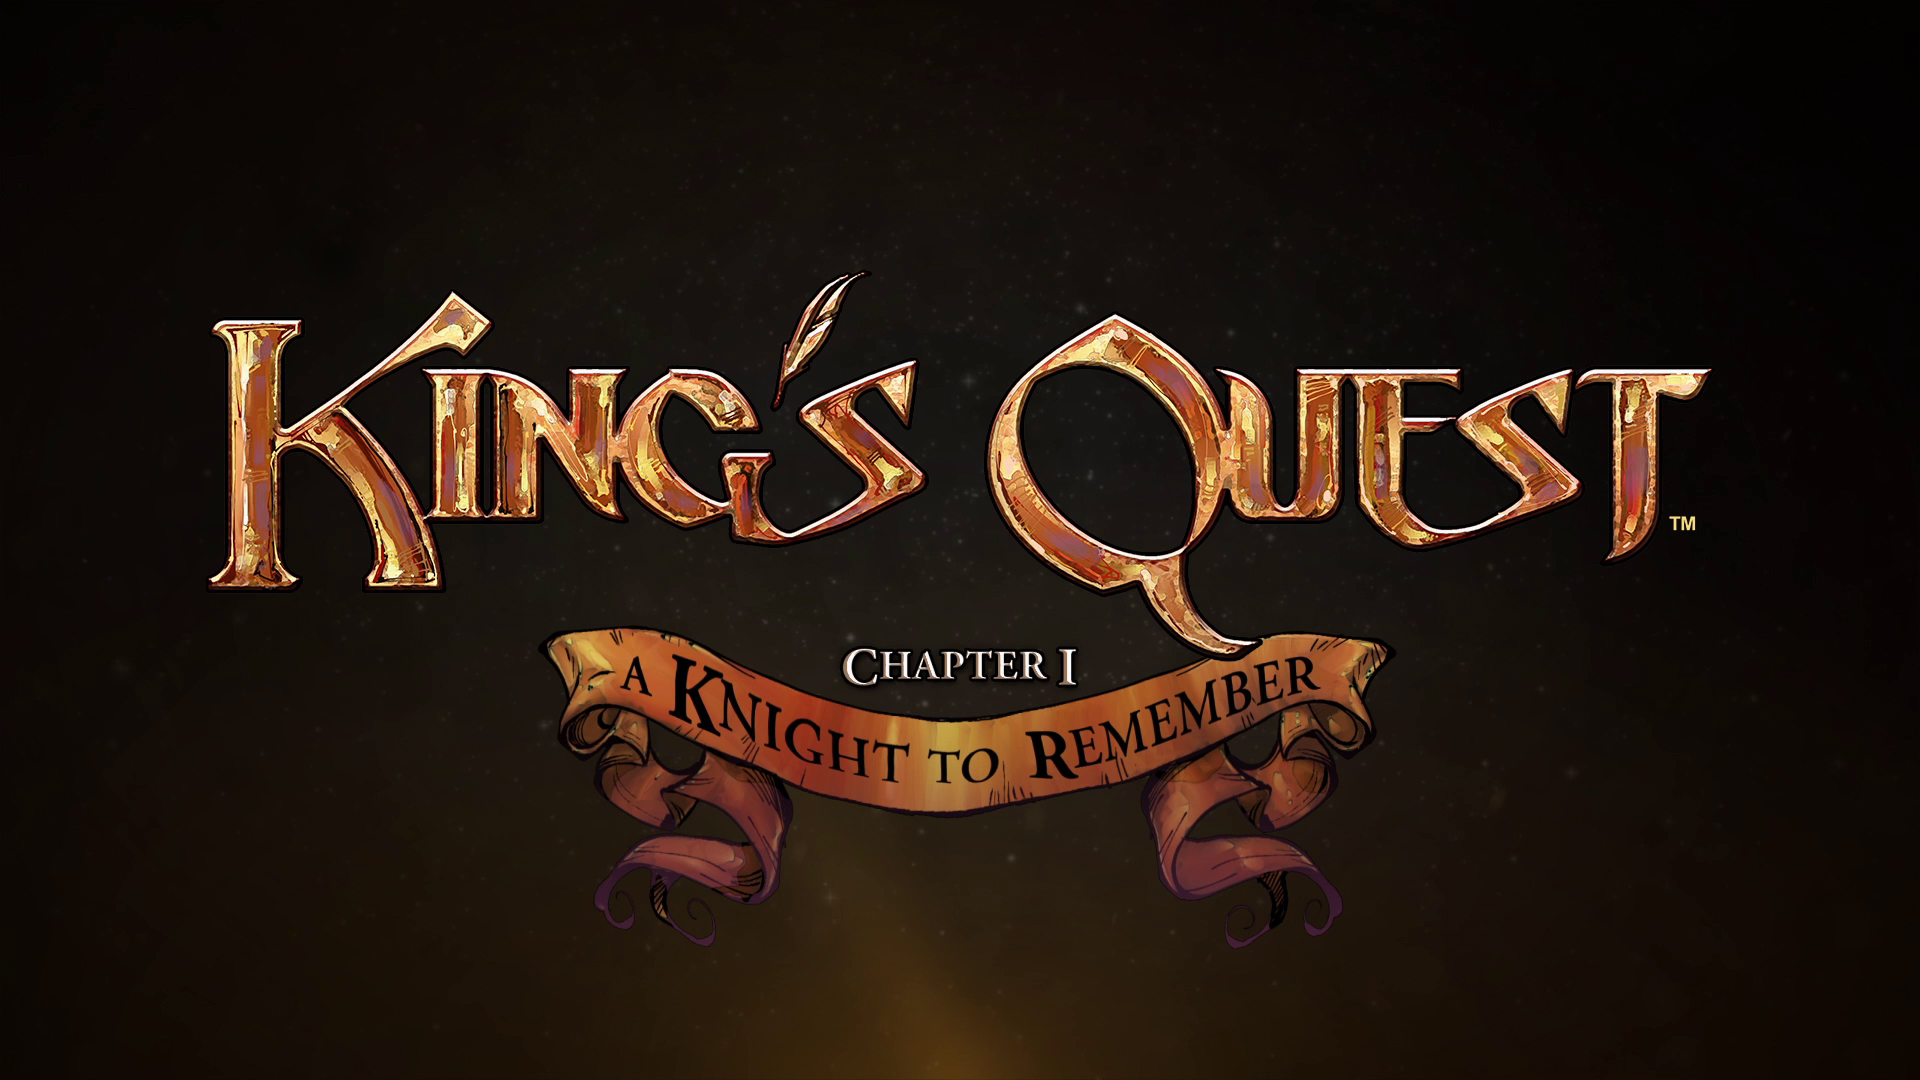 King's quest sceenshot 1